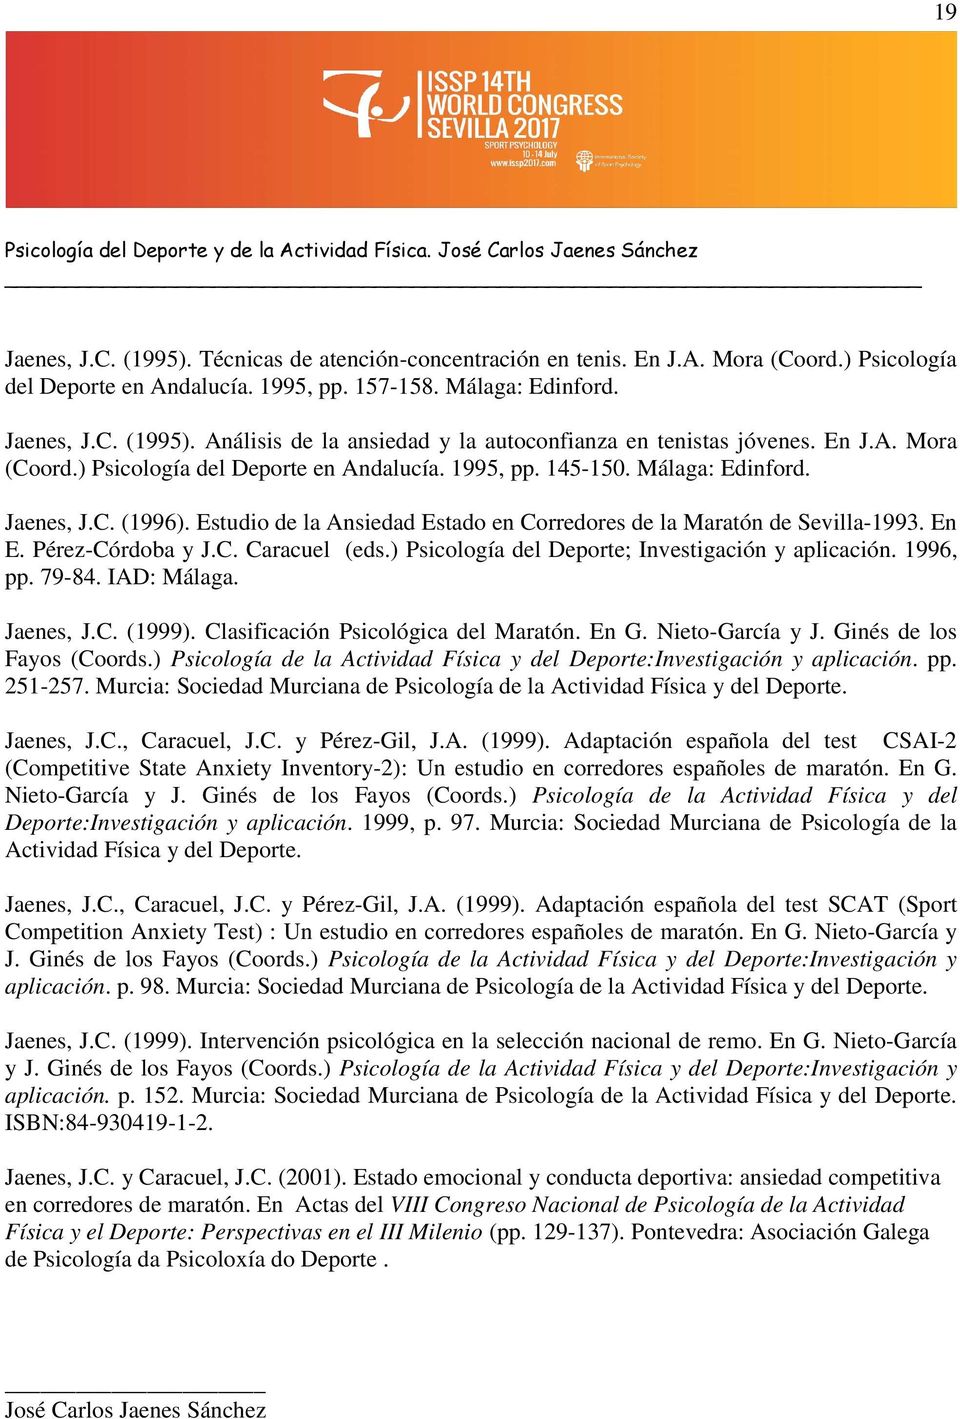 Jaenes, J.C. (1996). Estudio de la Ansiedad Estado en Corredores de la Maratón de Sevilla-1993. En E. Pérez-Córdoba y J.C. Caracuel (eds.) Psicología del Deporte; Investigación y aplicación. 1996, pp.